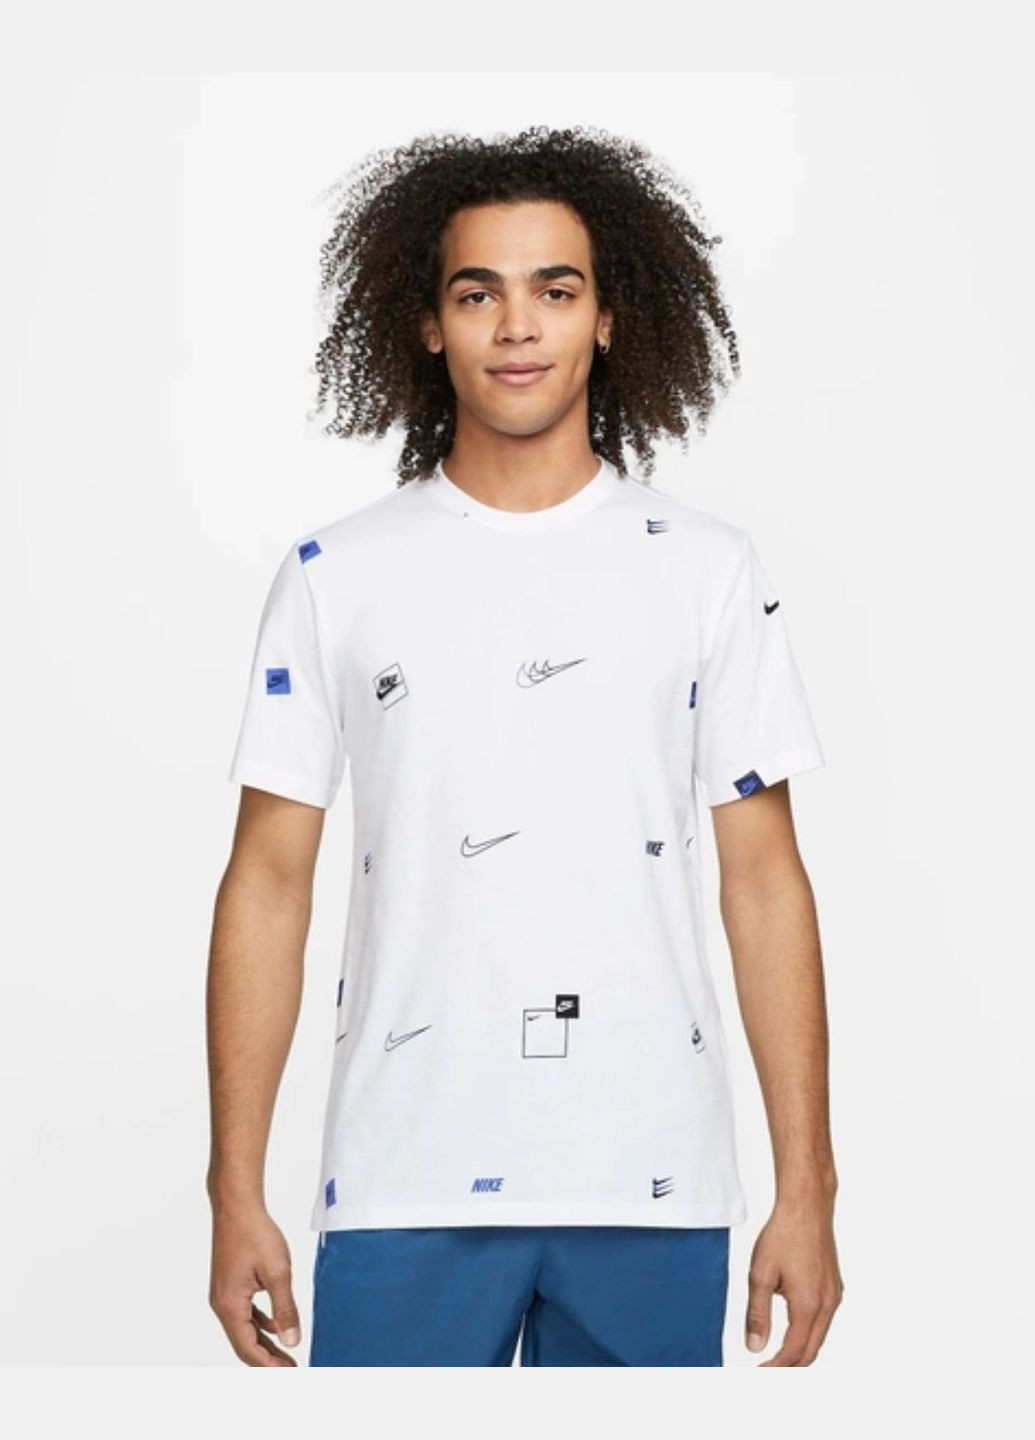 Біла футболка чоловіча 12 mo logo aop tee dn5246-100 біла Nike